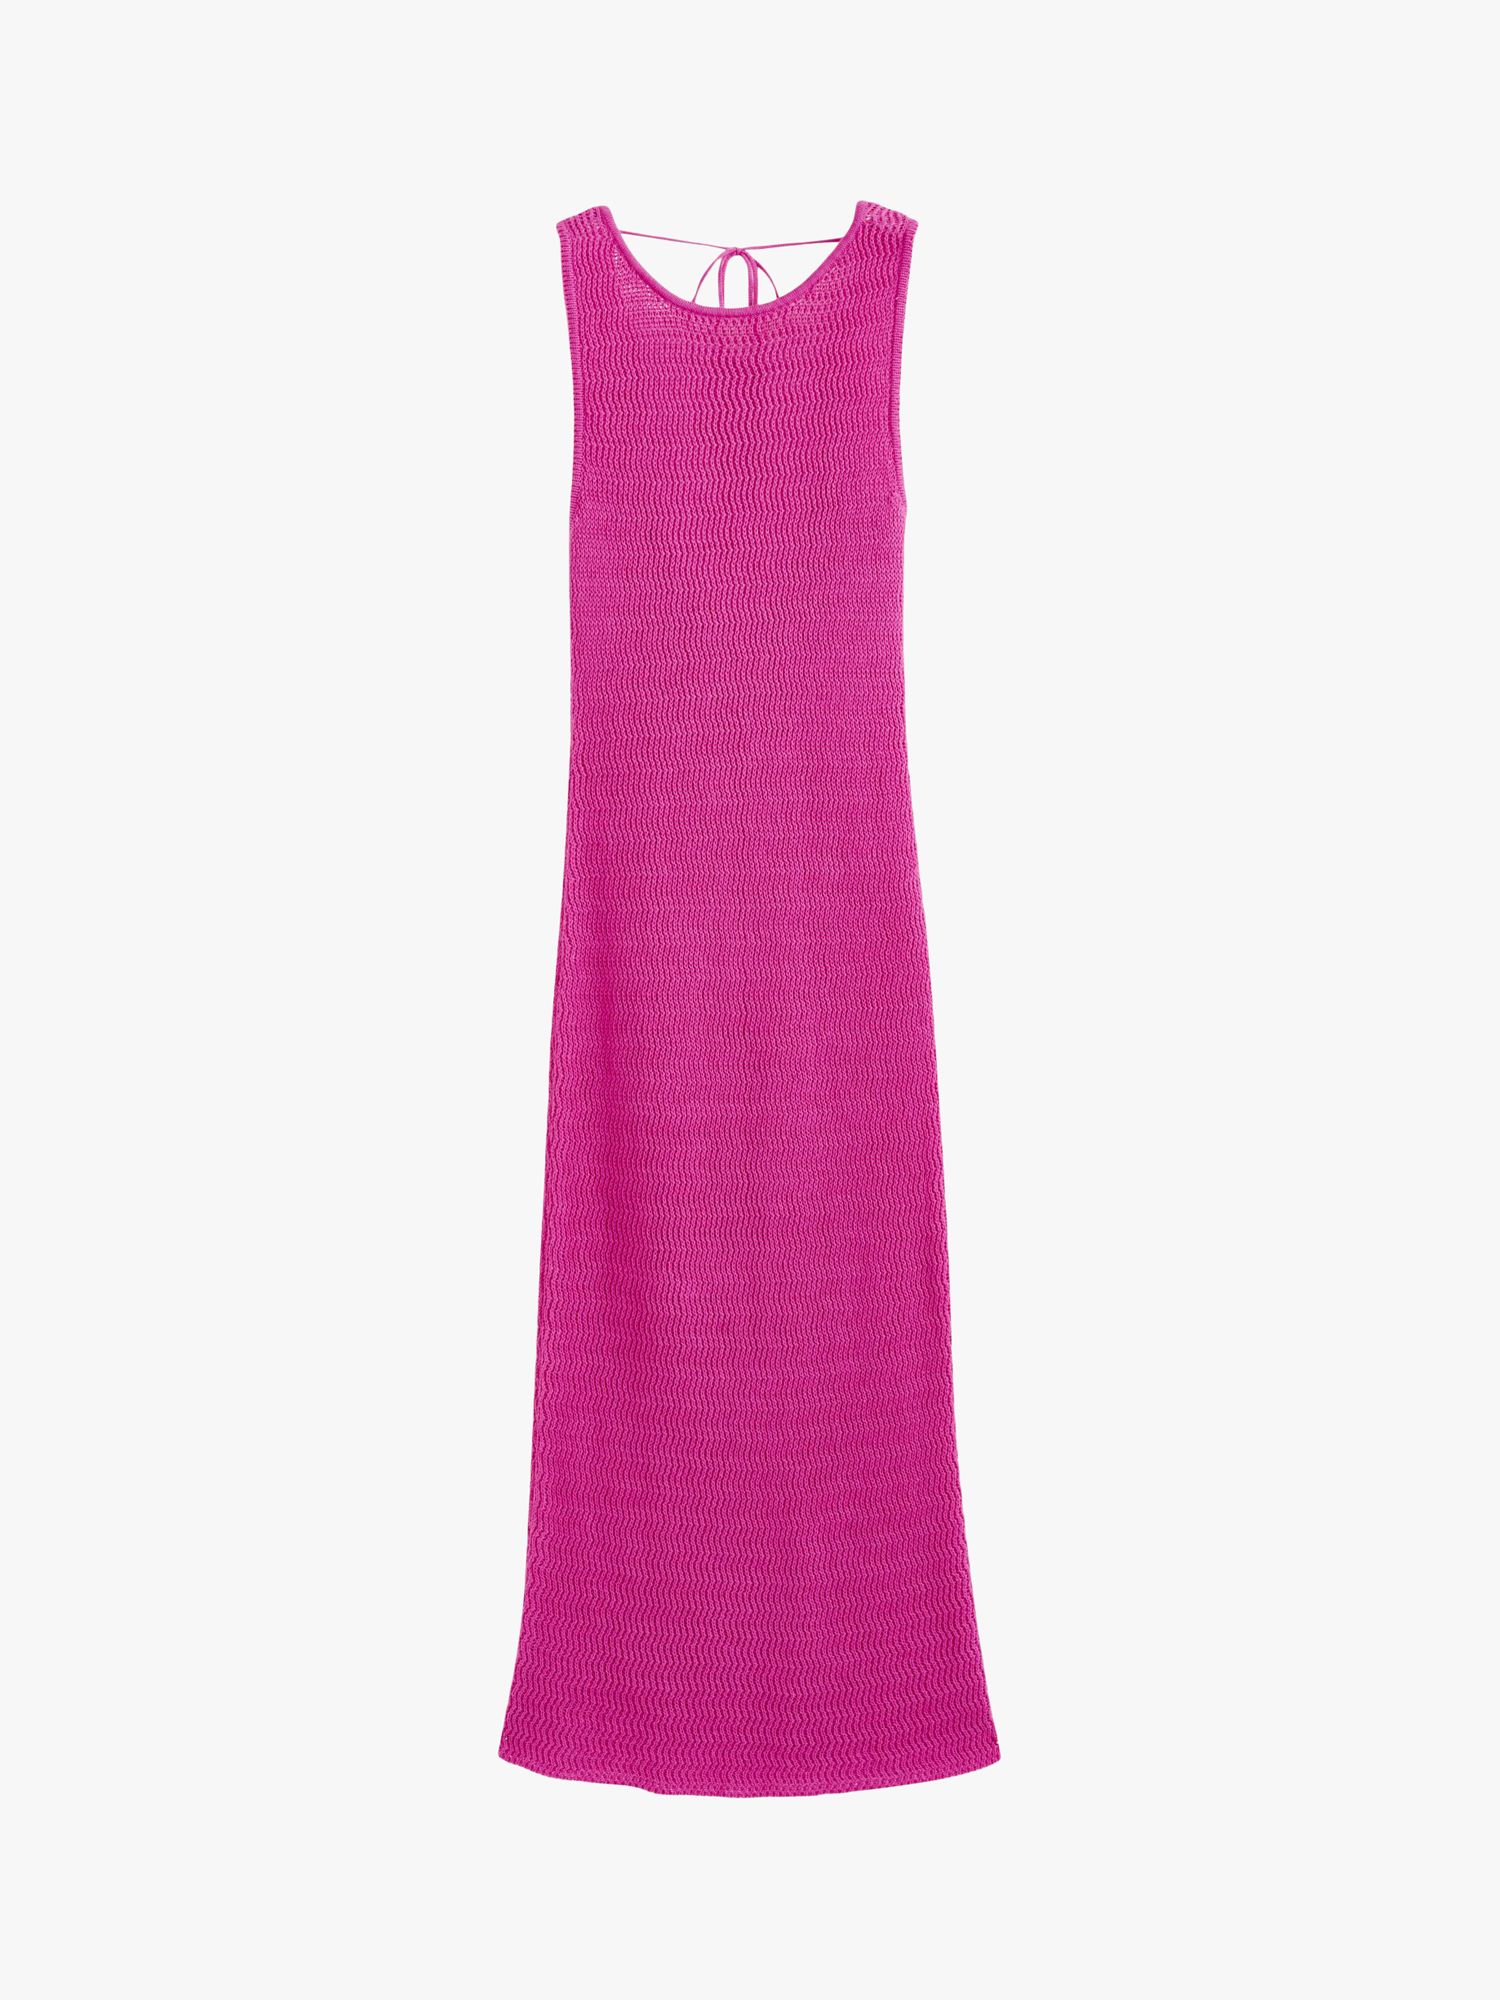 Chinti & Parker Ibiza Crotchet Linen Blend Midi Dress, Berry Pink, XS